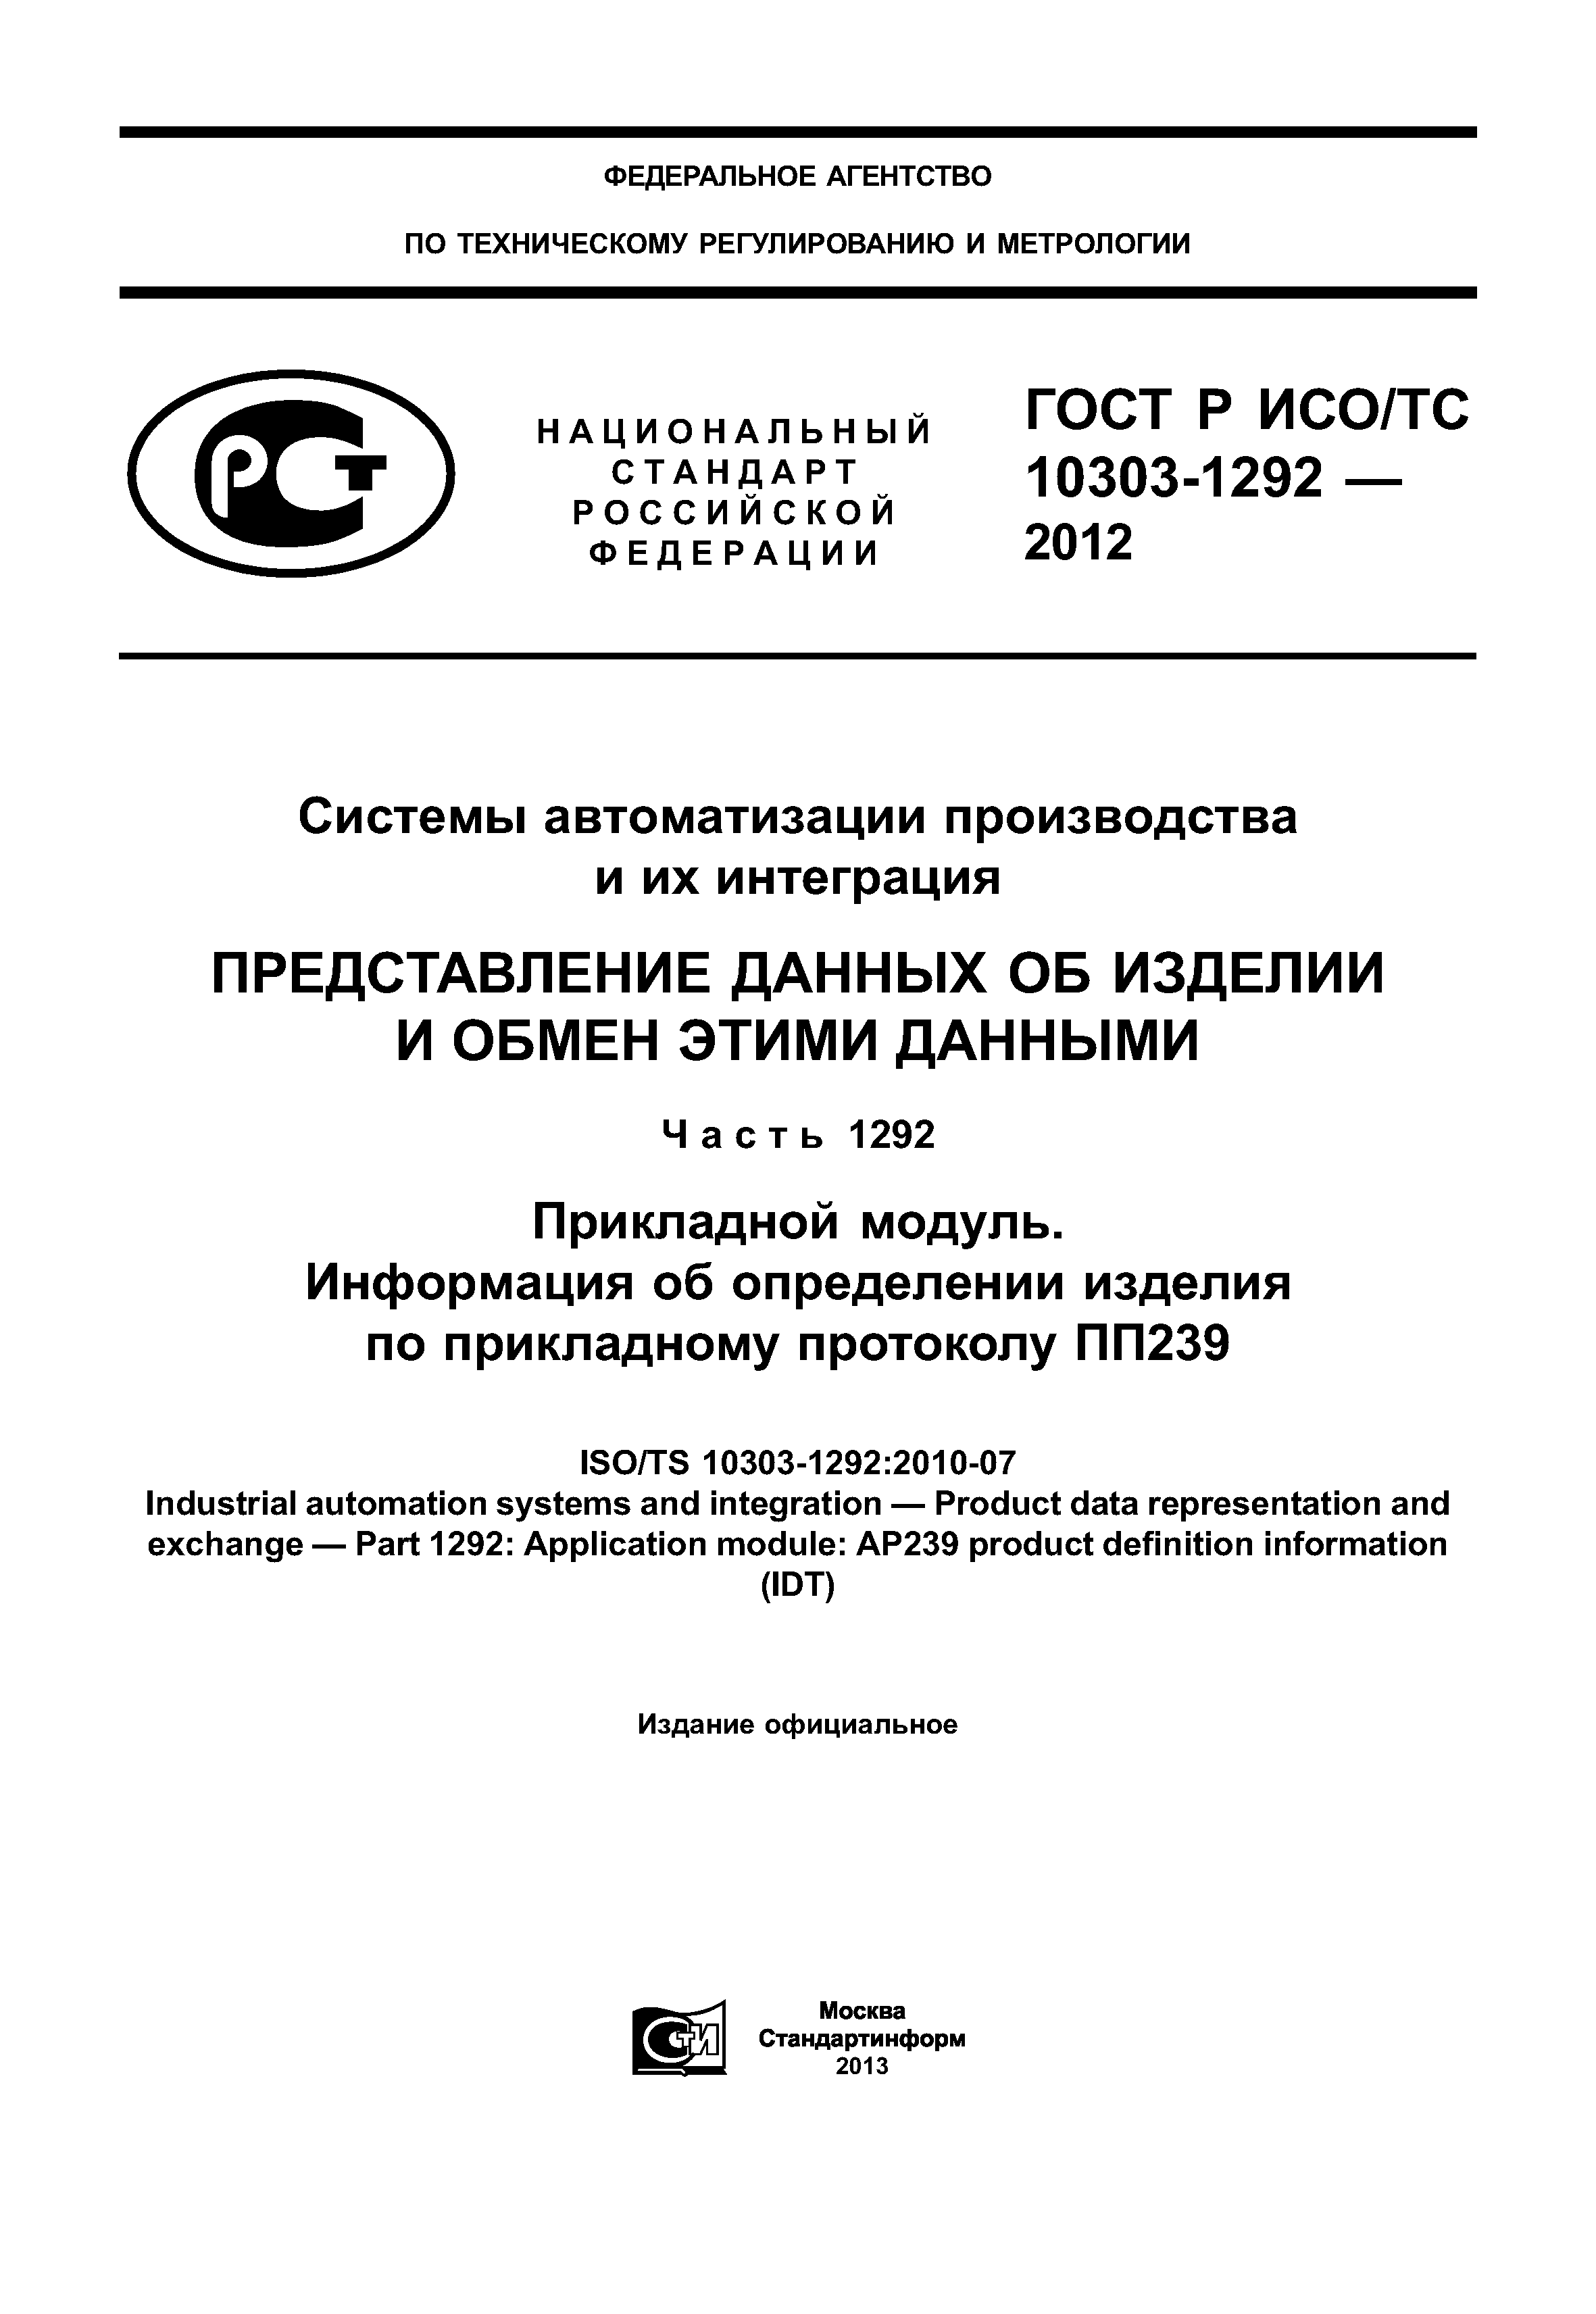 ГОСТ Р ИСО/ТС 10303-1292-2012